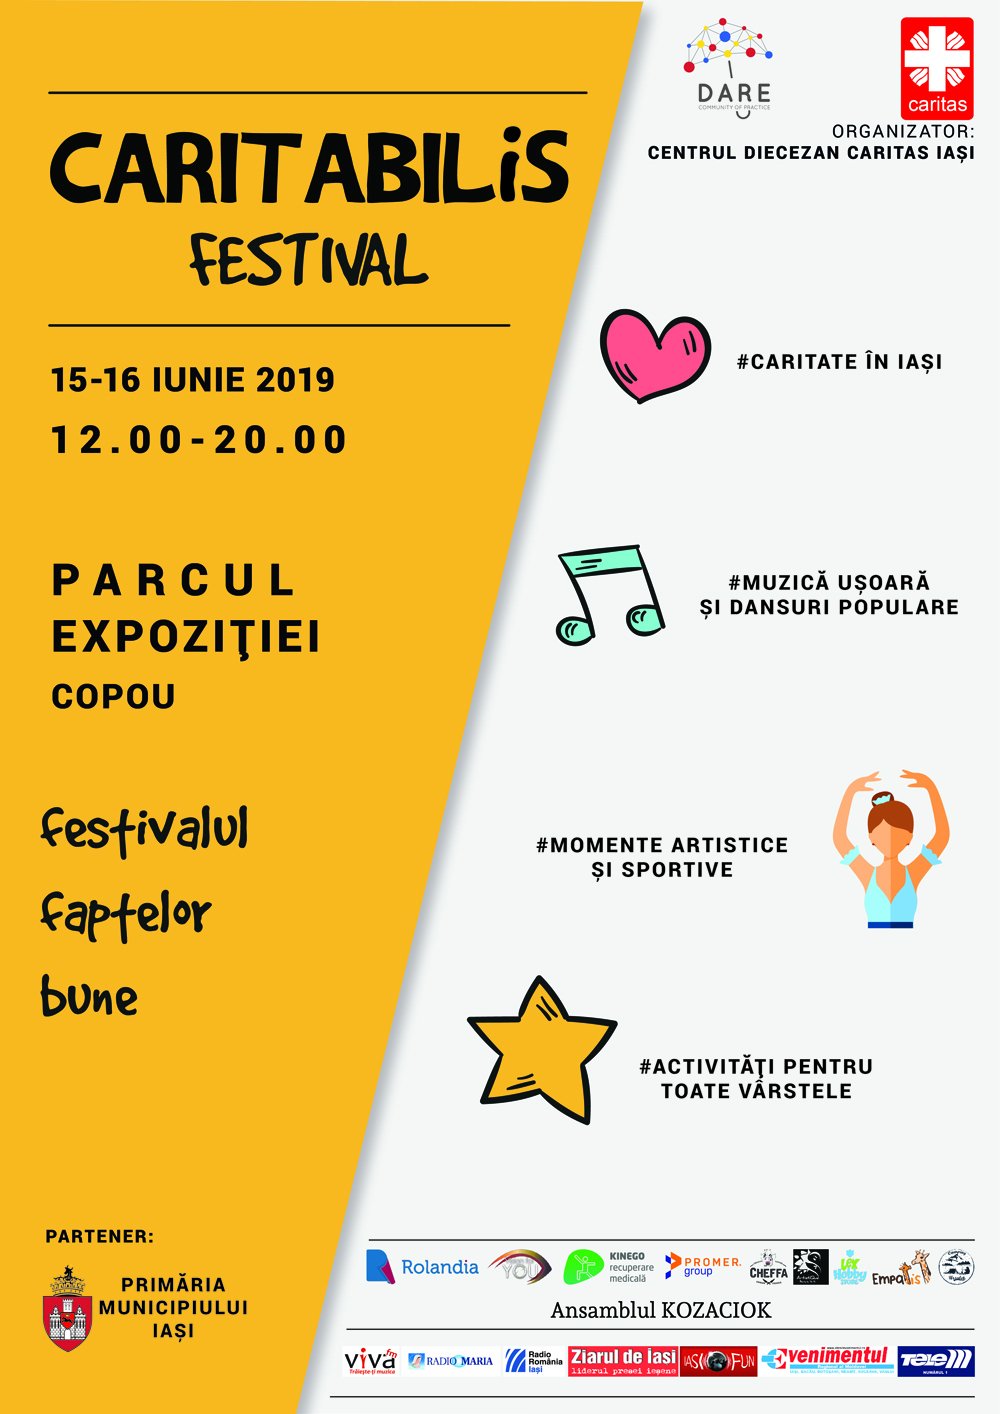  CARITABILiS Festival – Festivalul Faptelor Bune, în weekend în Copou